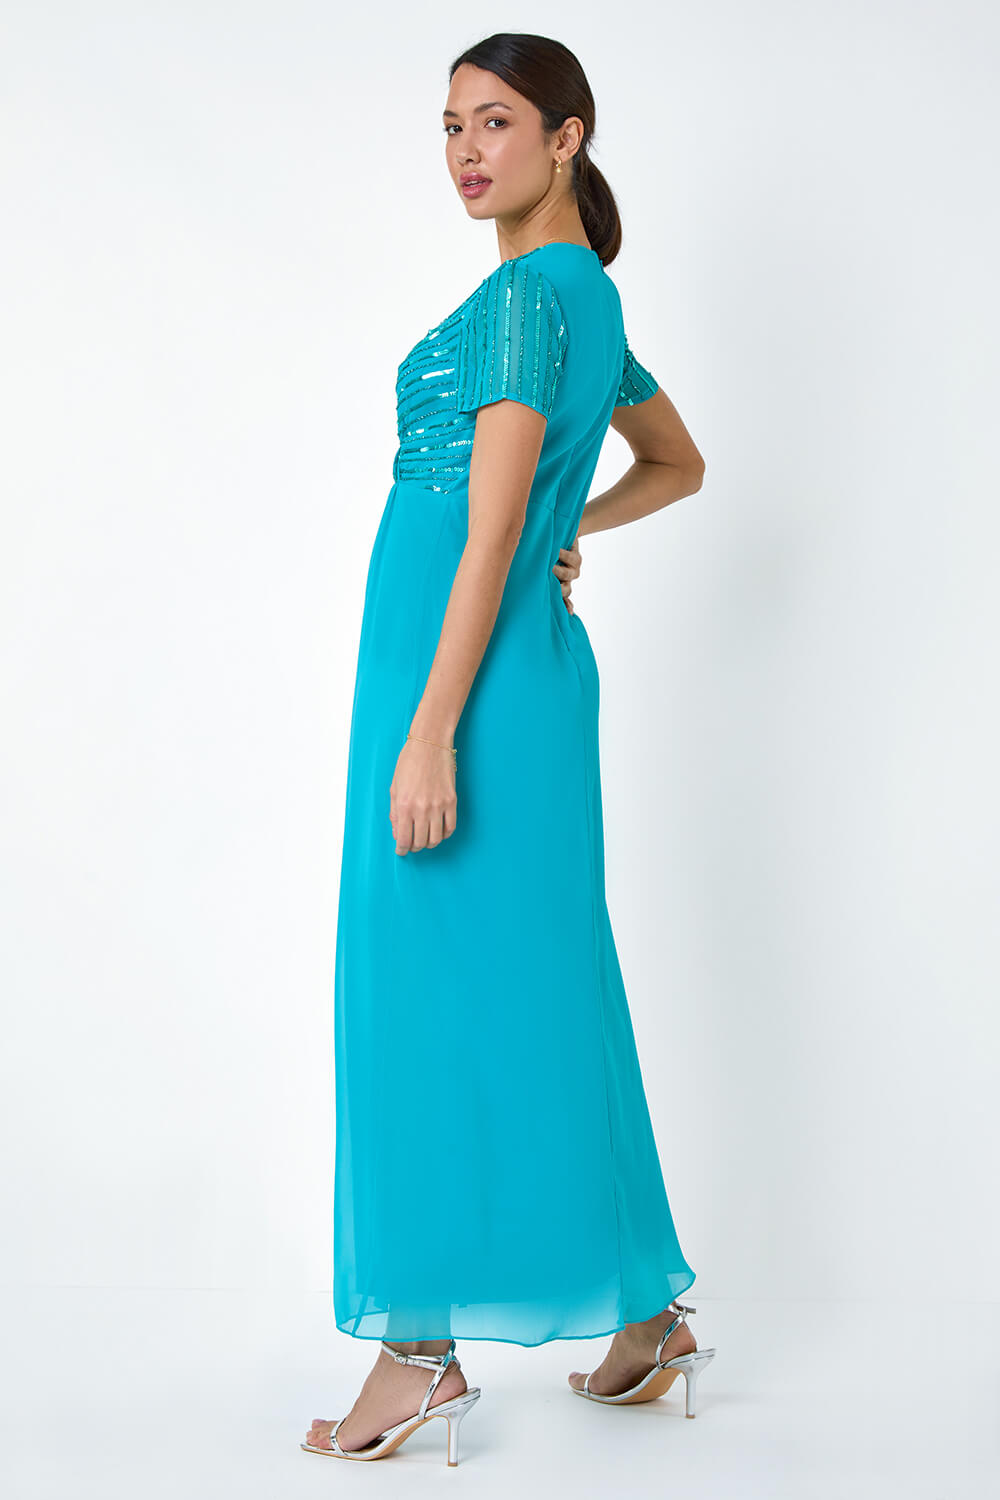 Teal Sequin Embellished Maxi Dress, Image 3 of 5